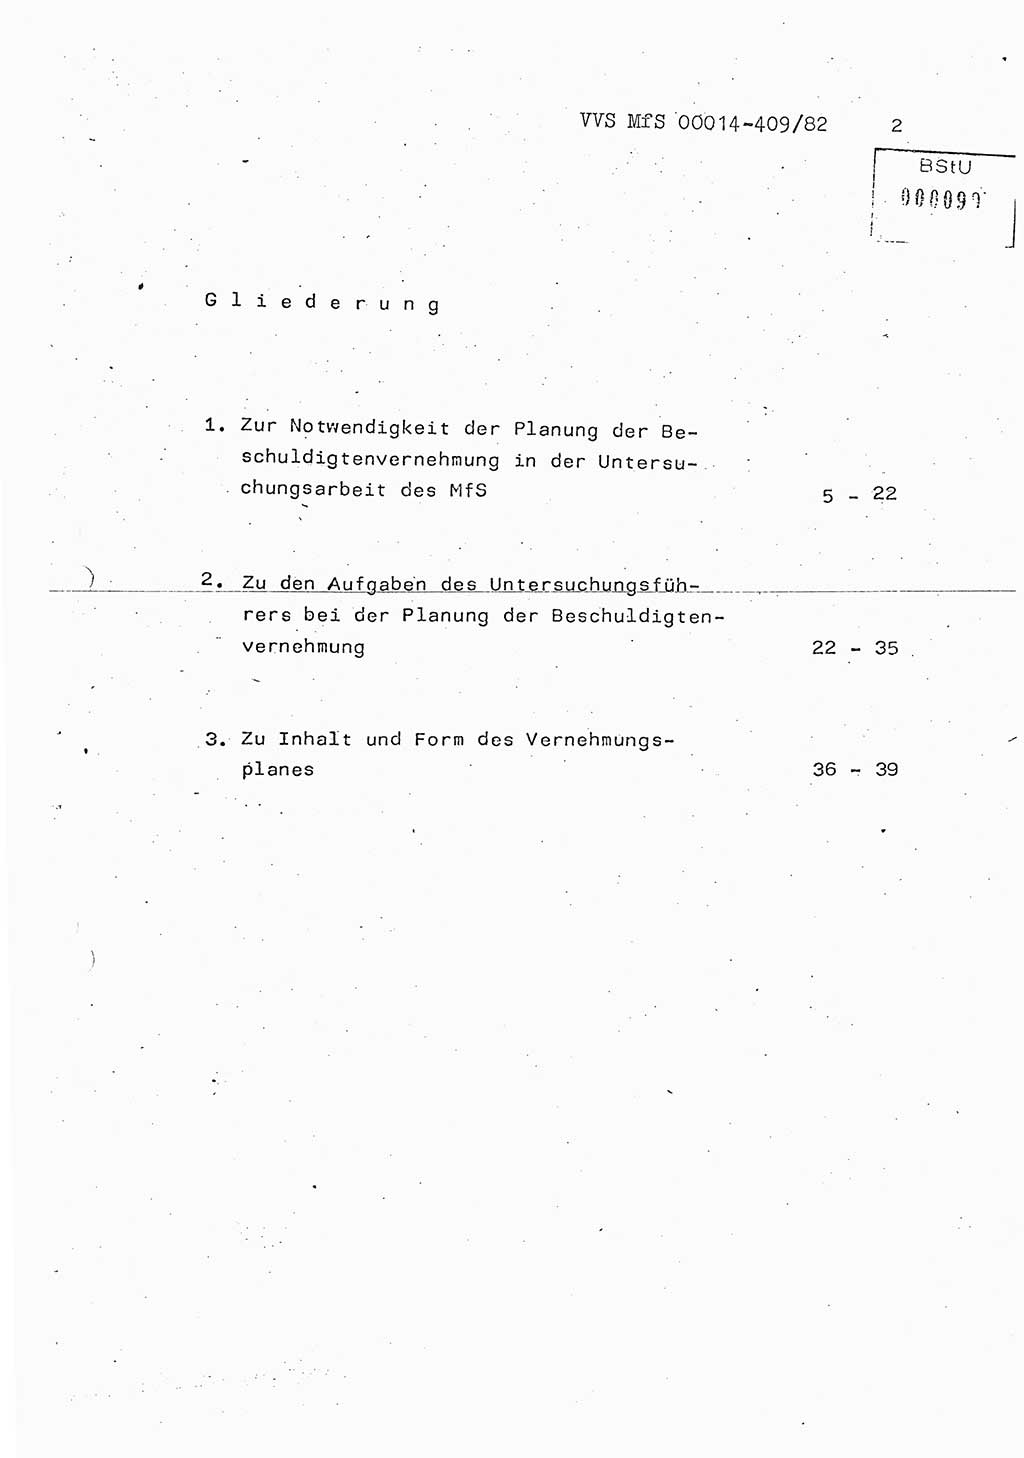 Lektion Ministerium für Staatssicherheit (MfS) [Deutsche Demokratische Republik (DDR)], Hauptabteilung (HA) Ⅸ, Vertrauliche Verschlußsache (VVS) o014-409/82, Berlin 1982, Seite 2 (Lekt. MfS DDR HA Ⅸ VVS o014-409/82 1982, S. 2)